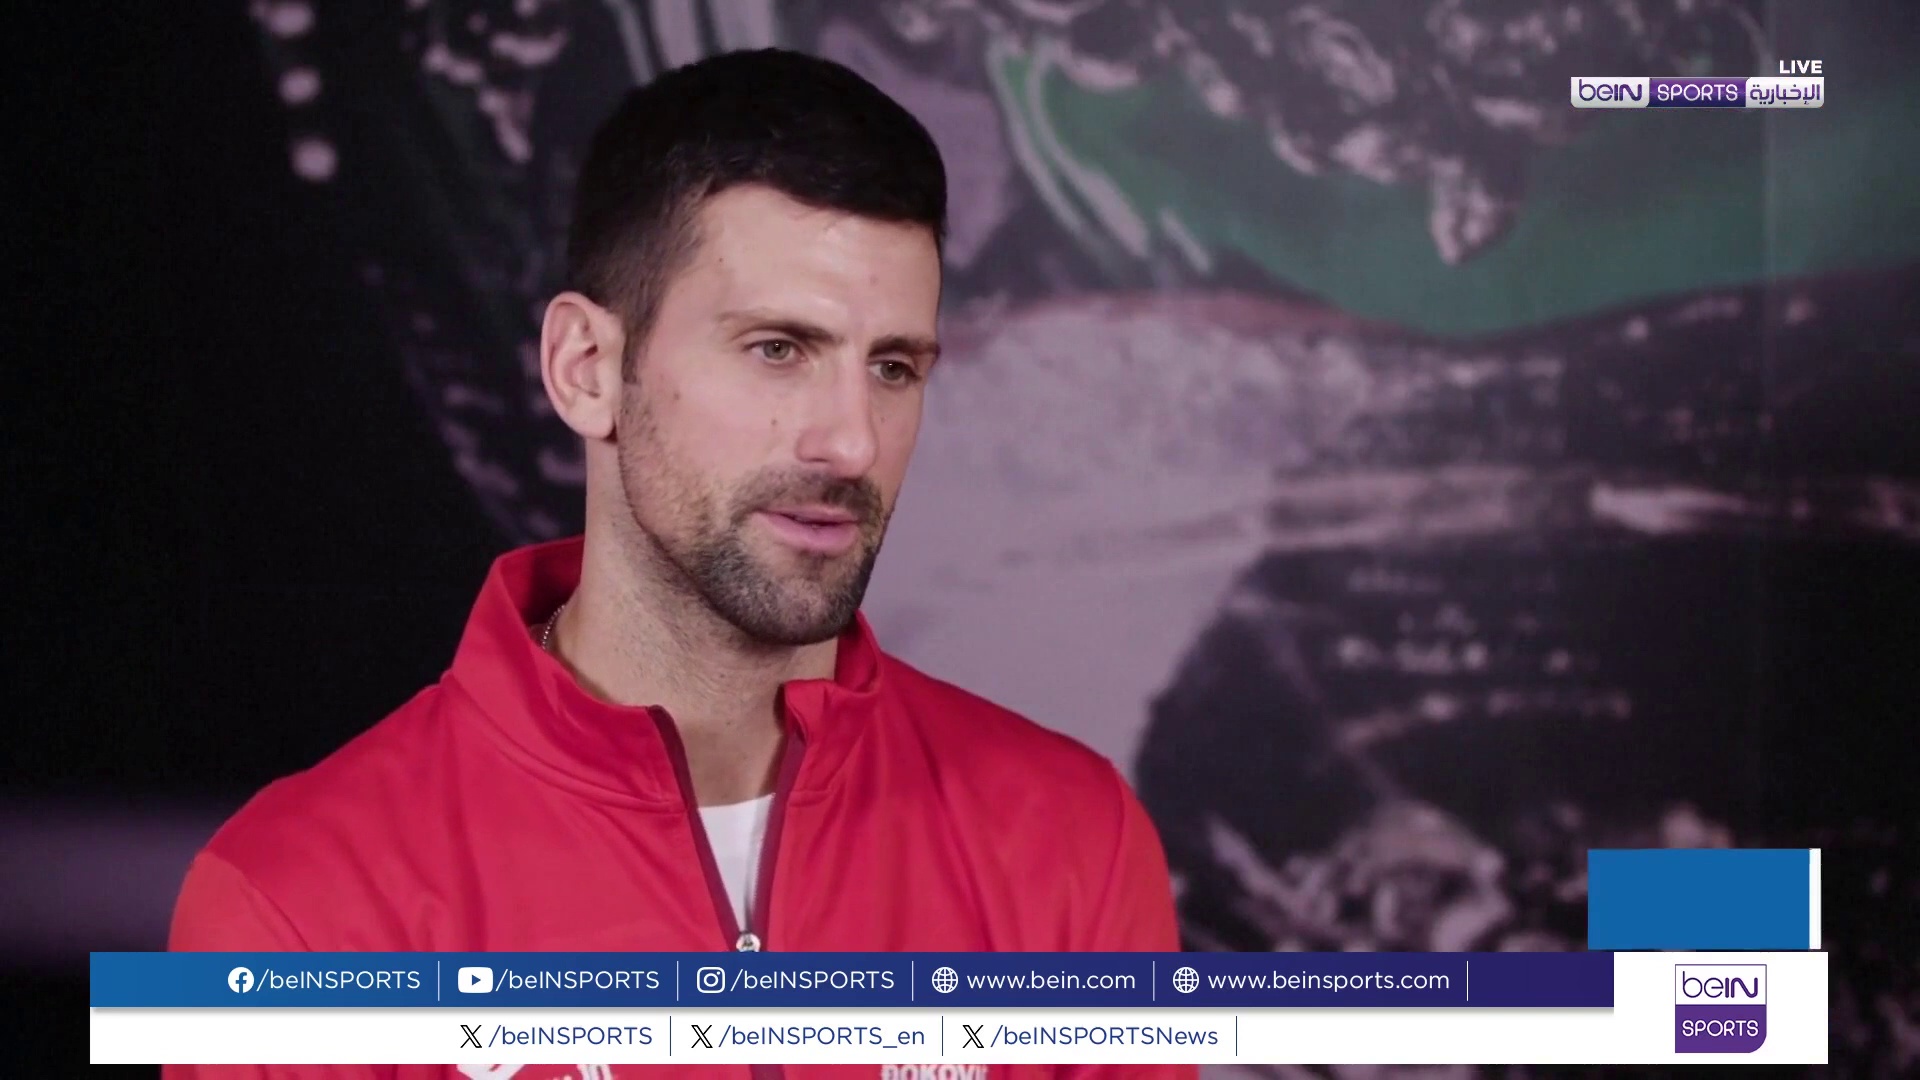 دجوكوفيتش يعرب عن اعتزازه بالمشاركة مع المنتخب الصربي في منافسات كأس ديفيس